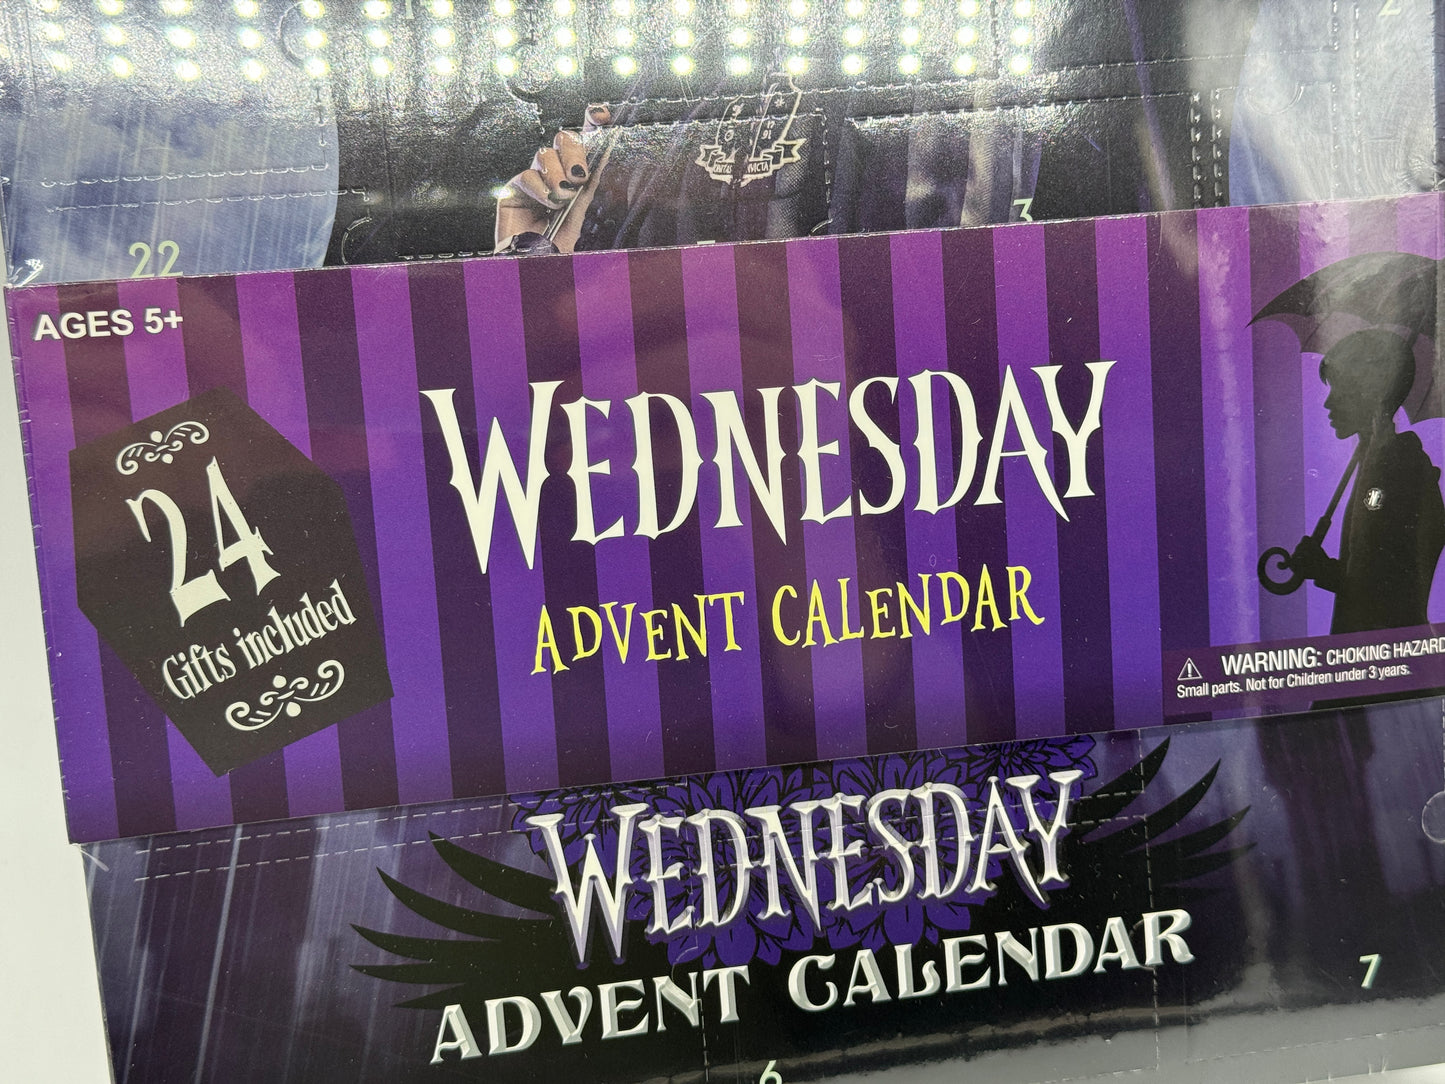 Wednesday "Adventskalender" mit 24 Überraschungen Countdown to Christmas